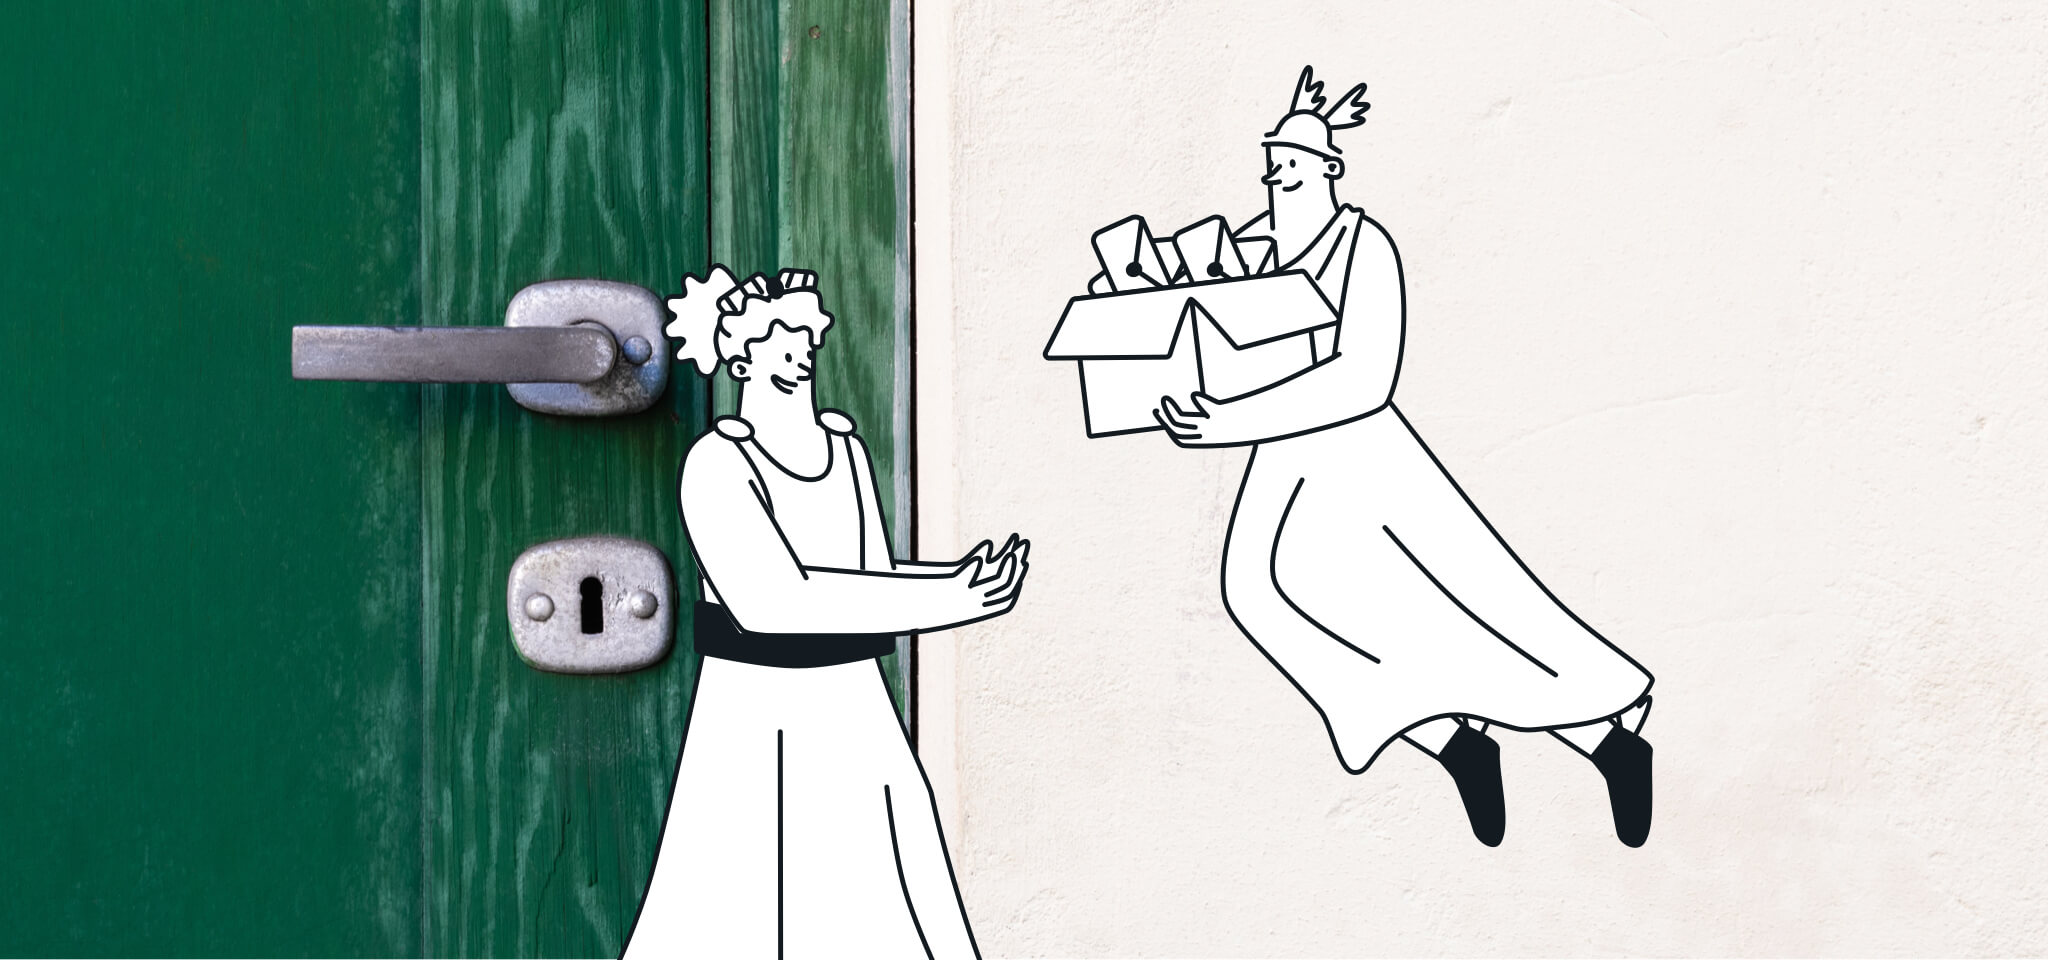 Hermès distribue le courrier à une déesse par une porte verte